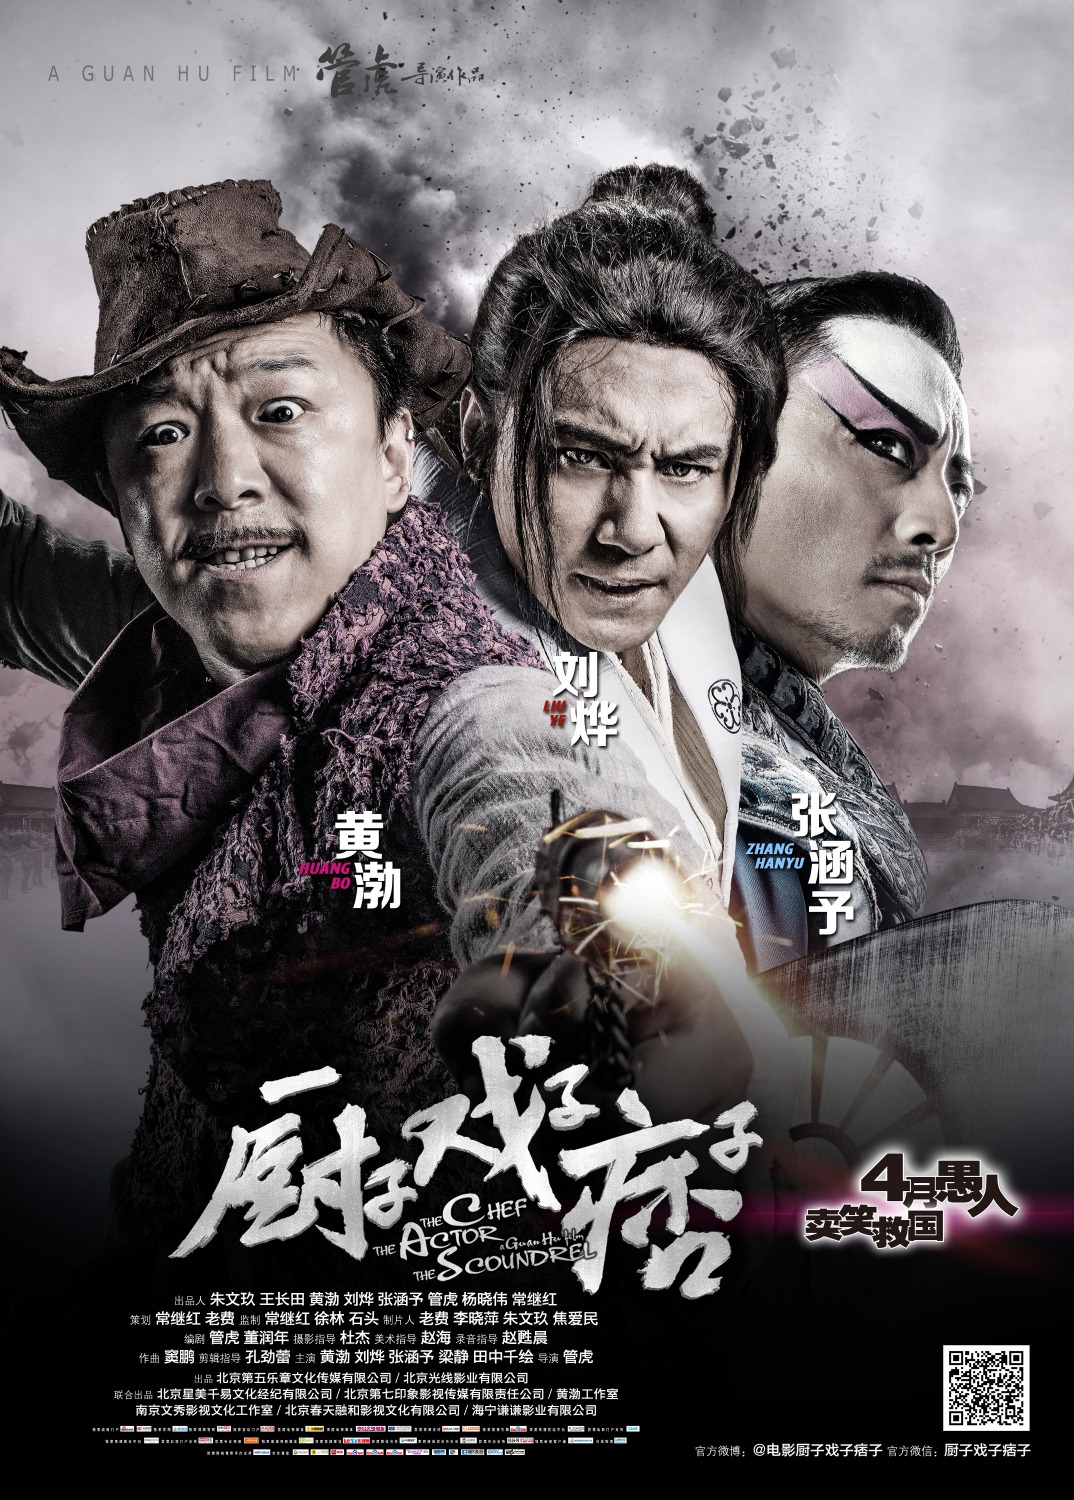 Extra Large Movie Poster Image for Chu zi Xi zi Pi zi 